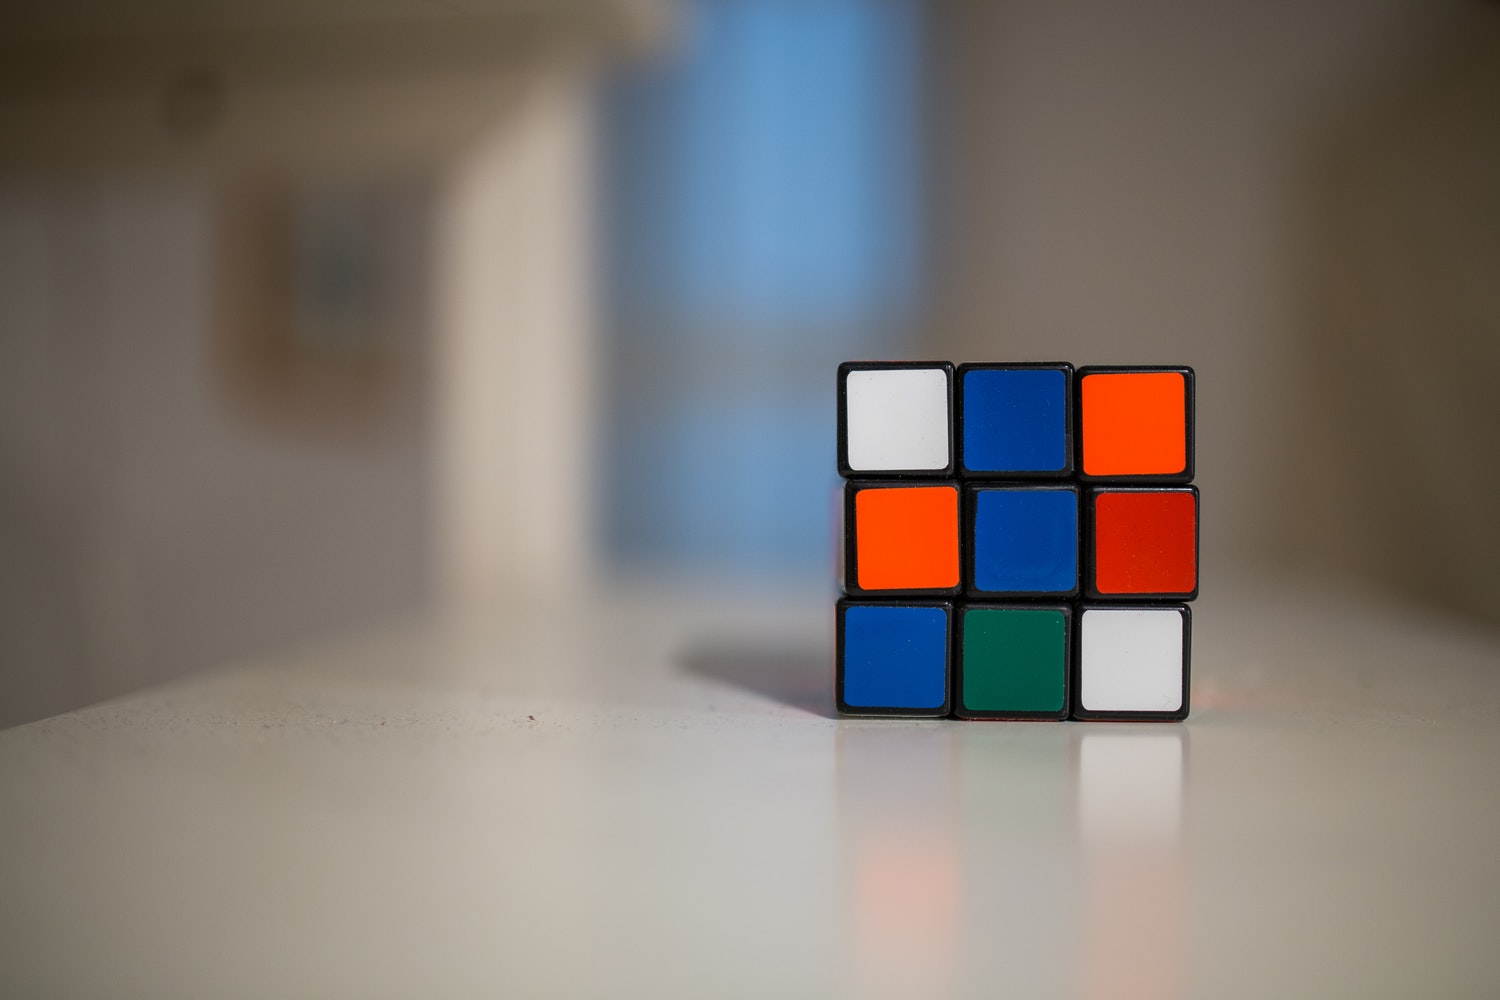 A Rubik's cube on a table